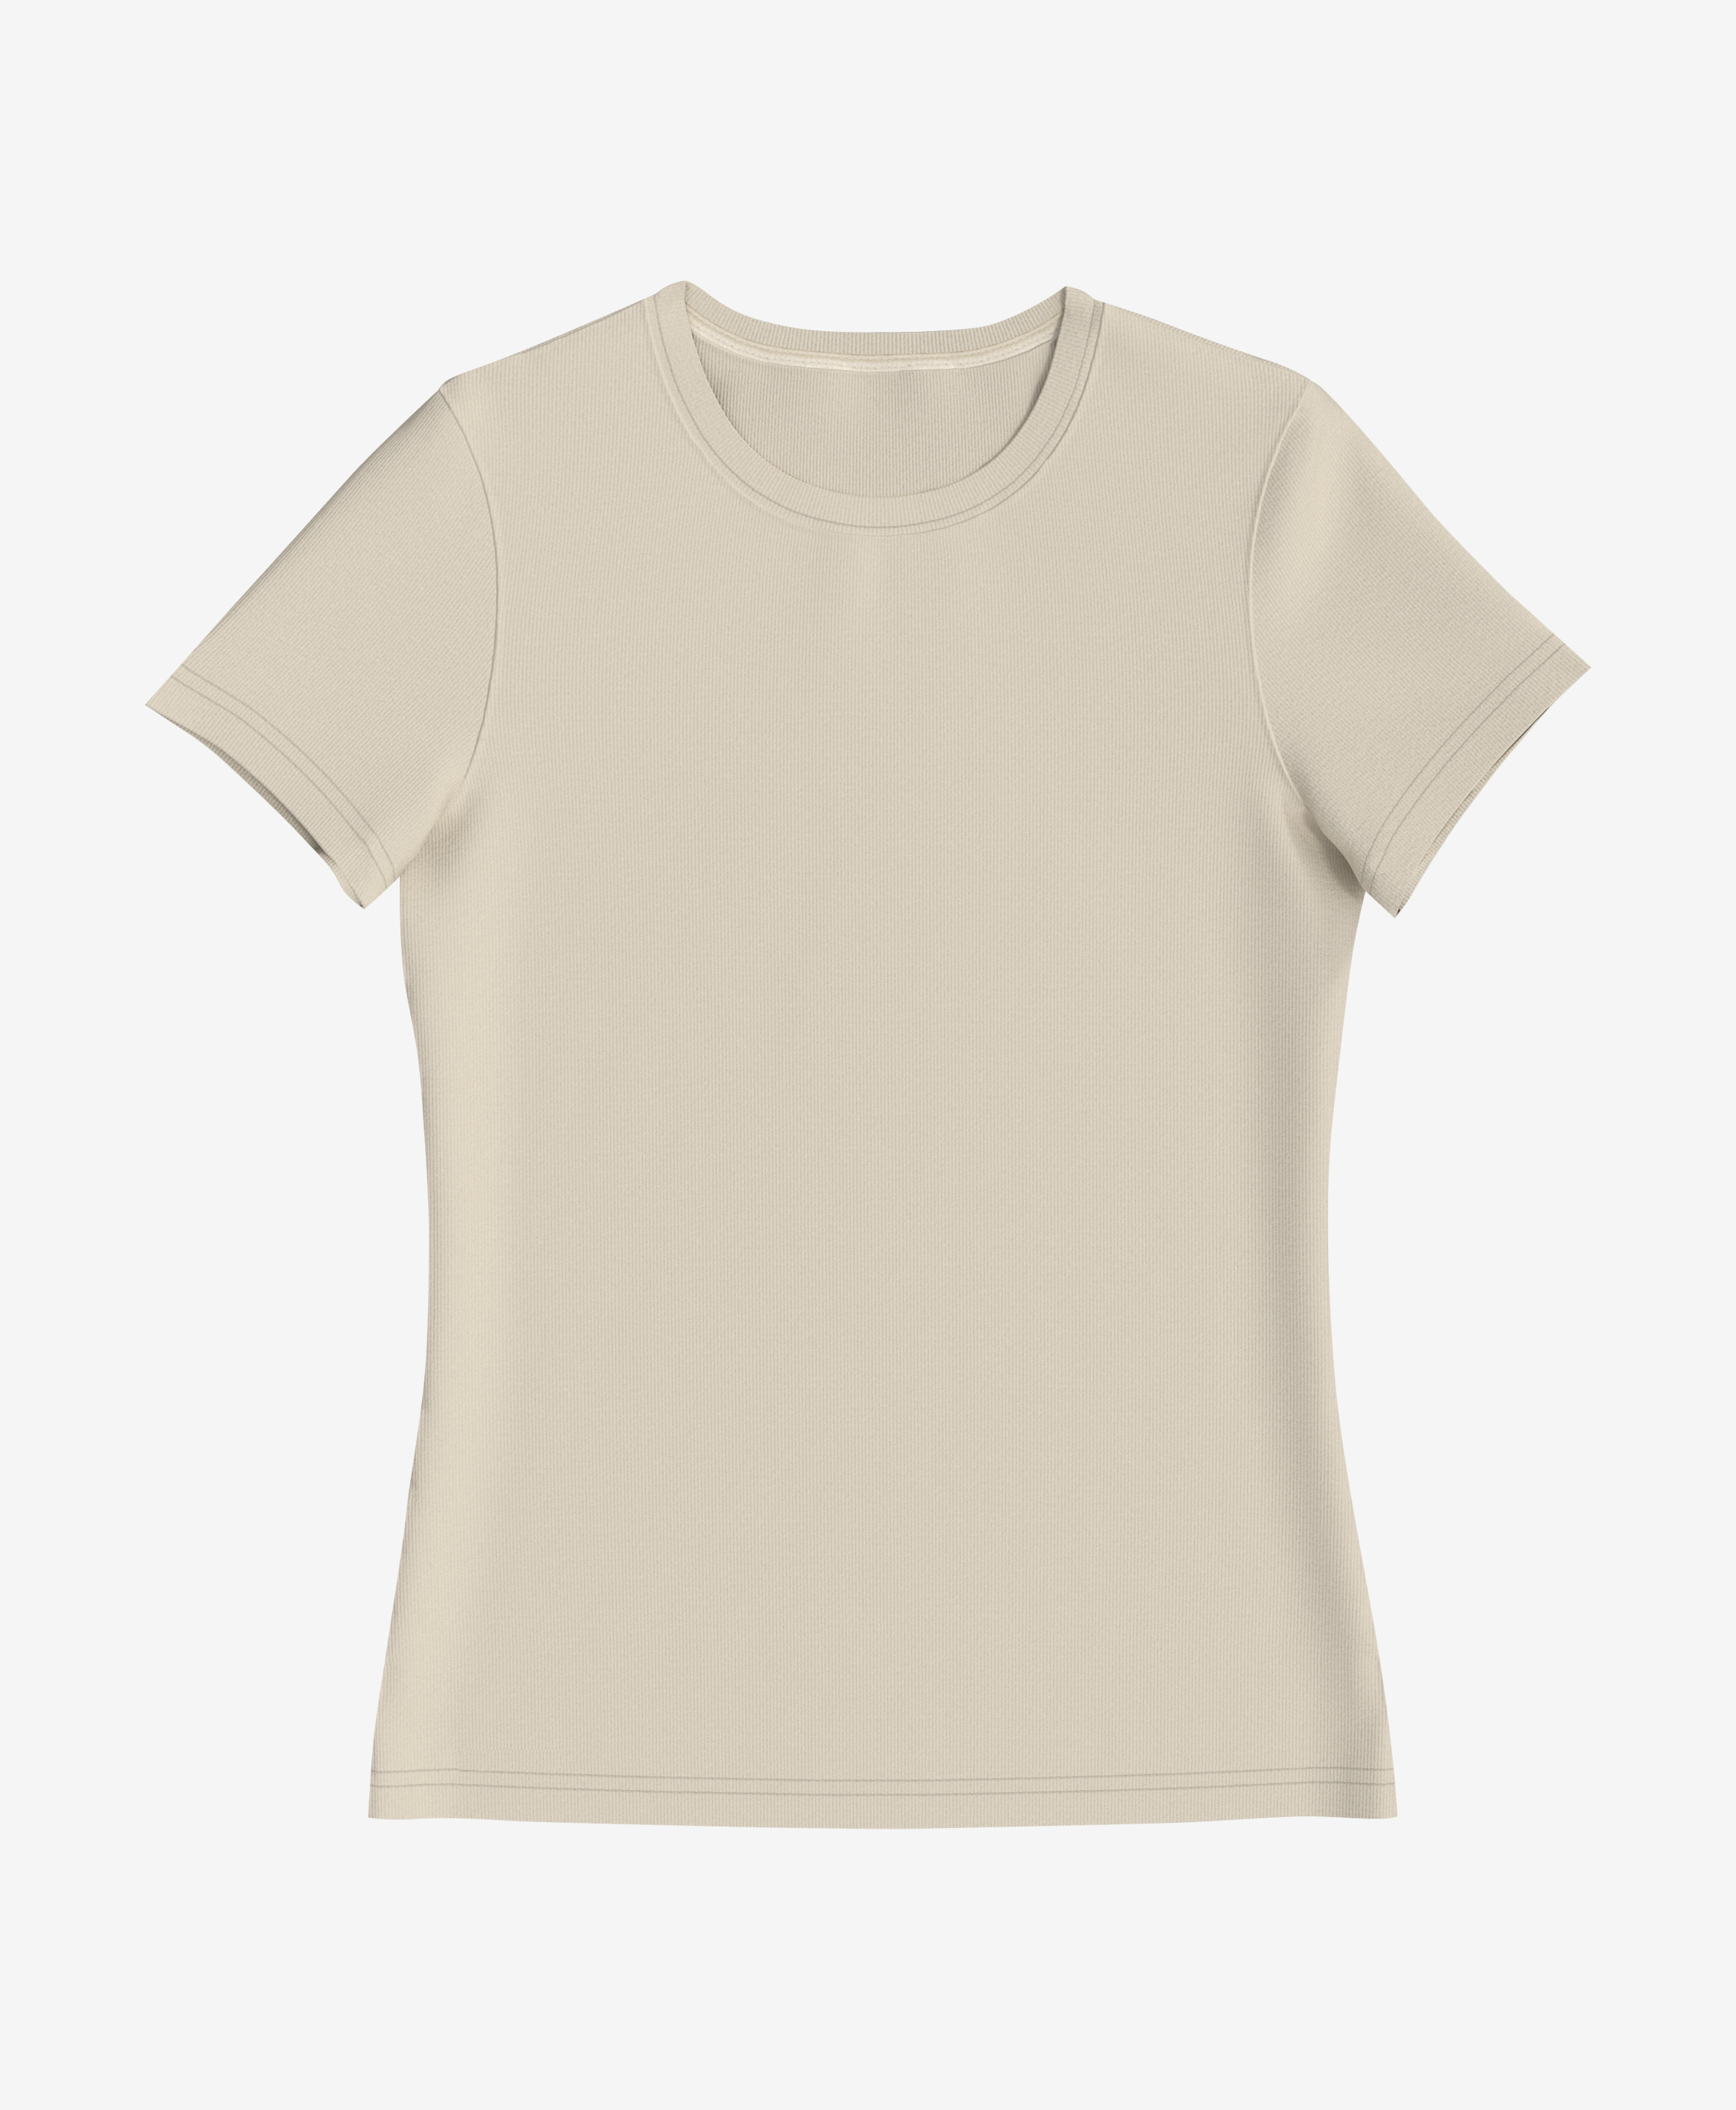 Damska koszulka 100% bawełny, prążkowana, kolor biały, łososiowy, S-XXXL